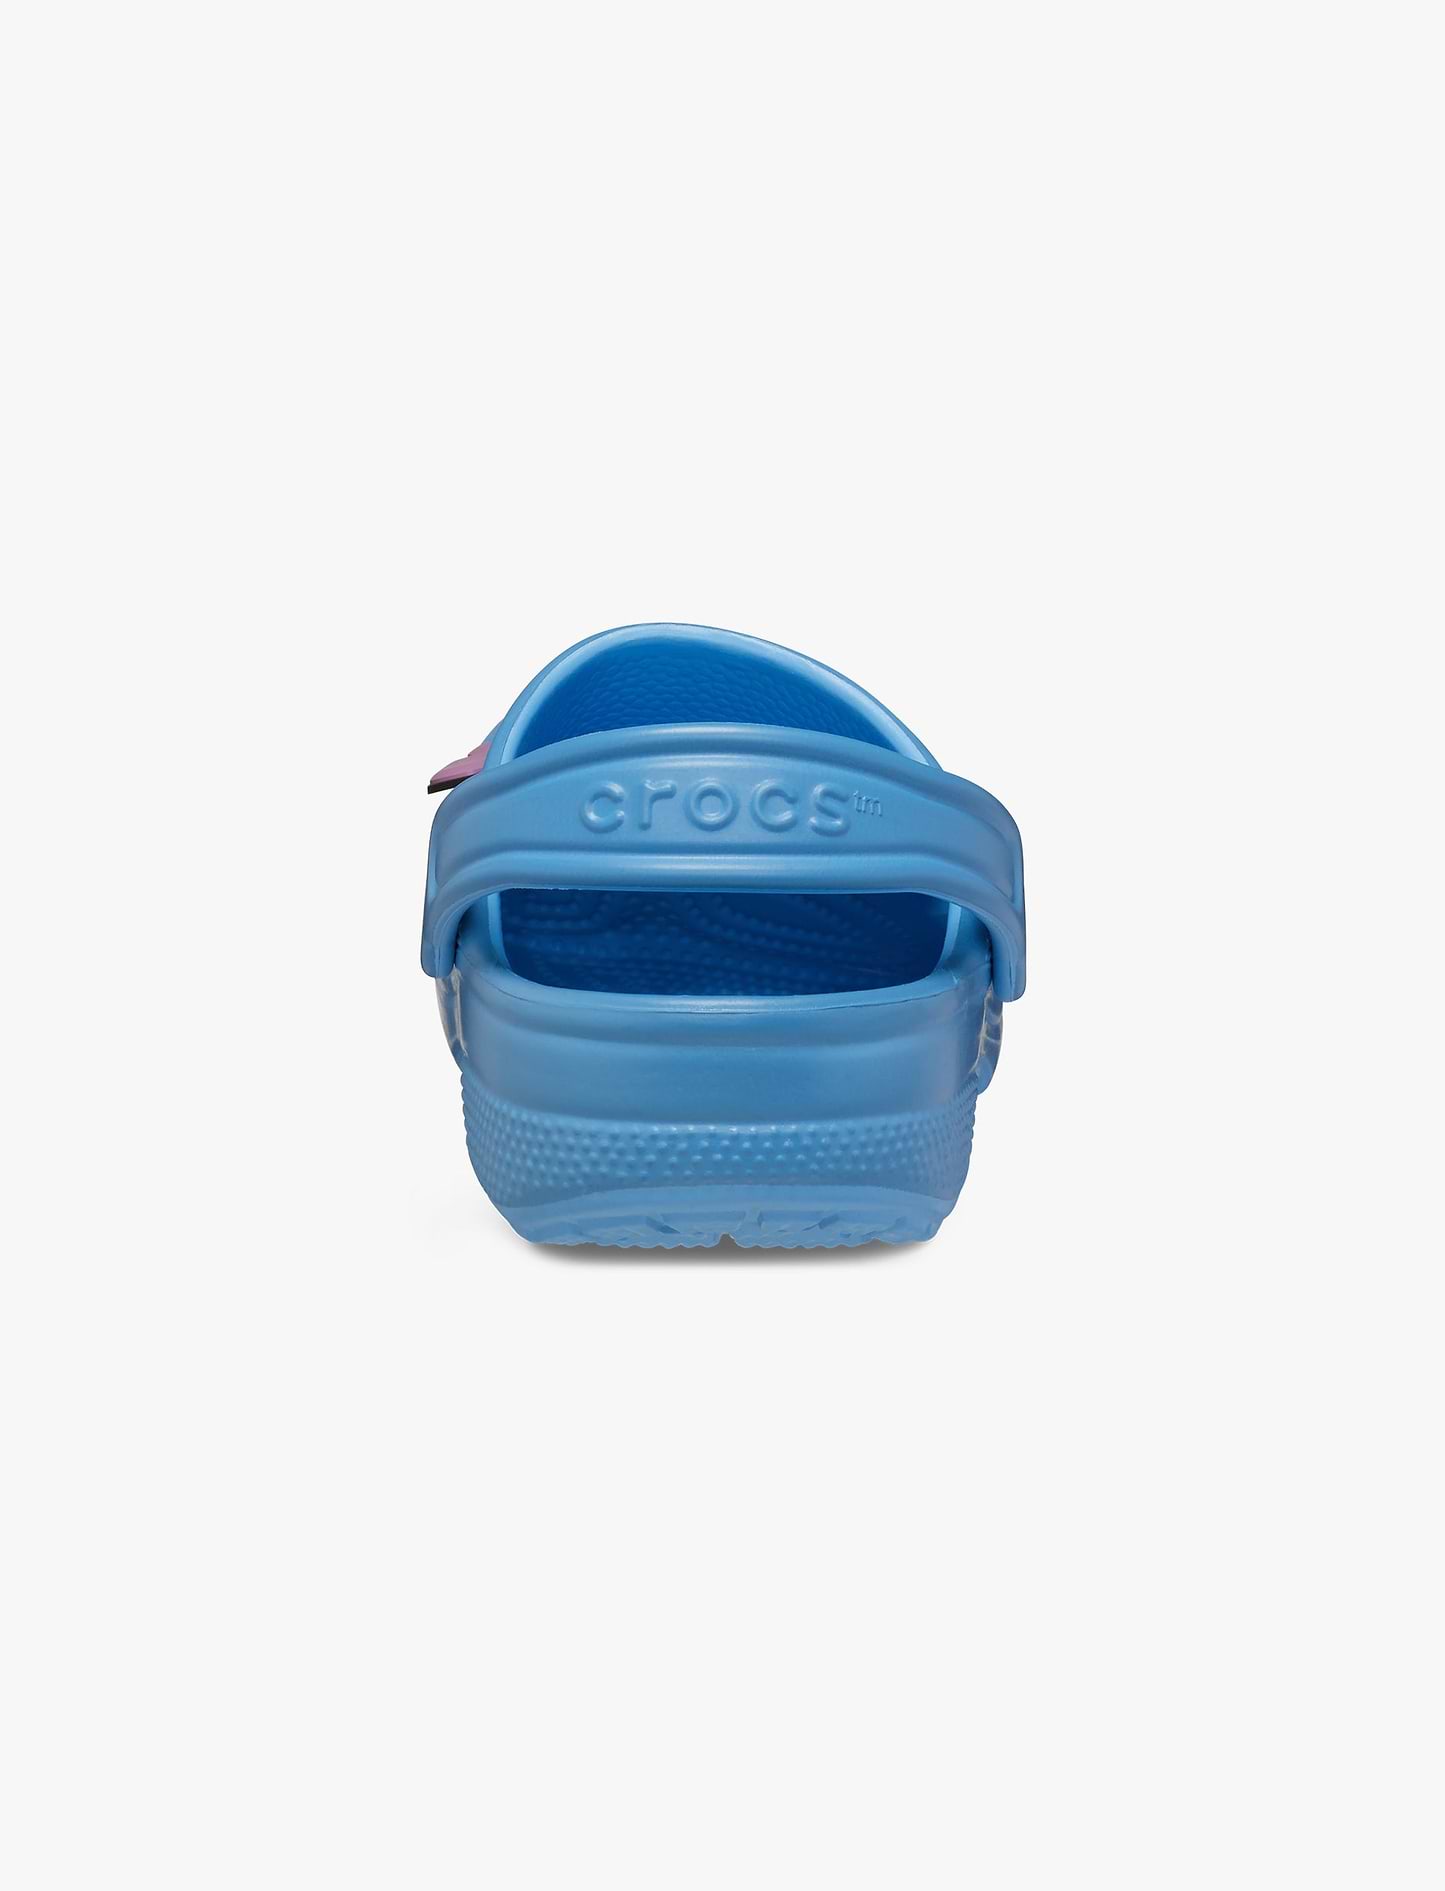 Crocs Stitch Classic Clog T - כפכפי קרוקס לילדים סטיץ' בצבע כחול חמצן מידות קטנות